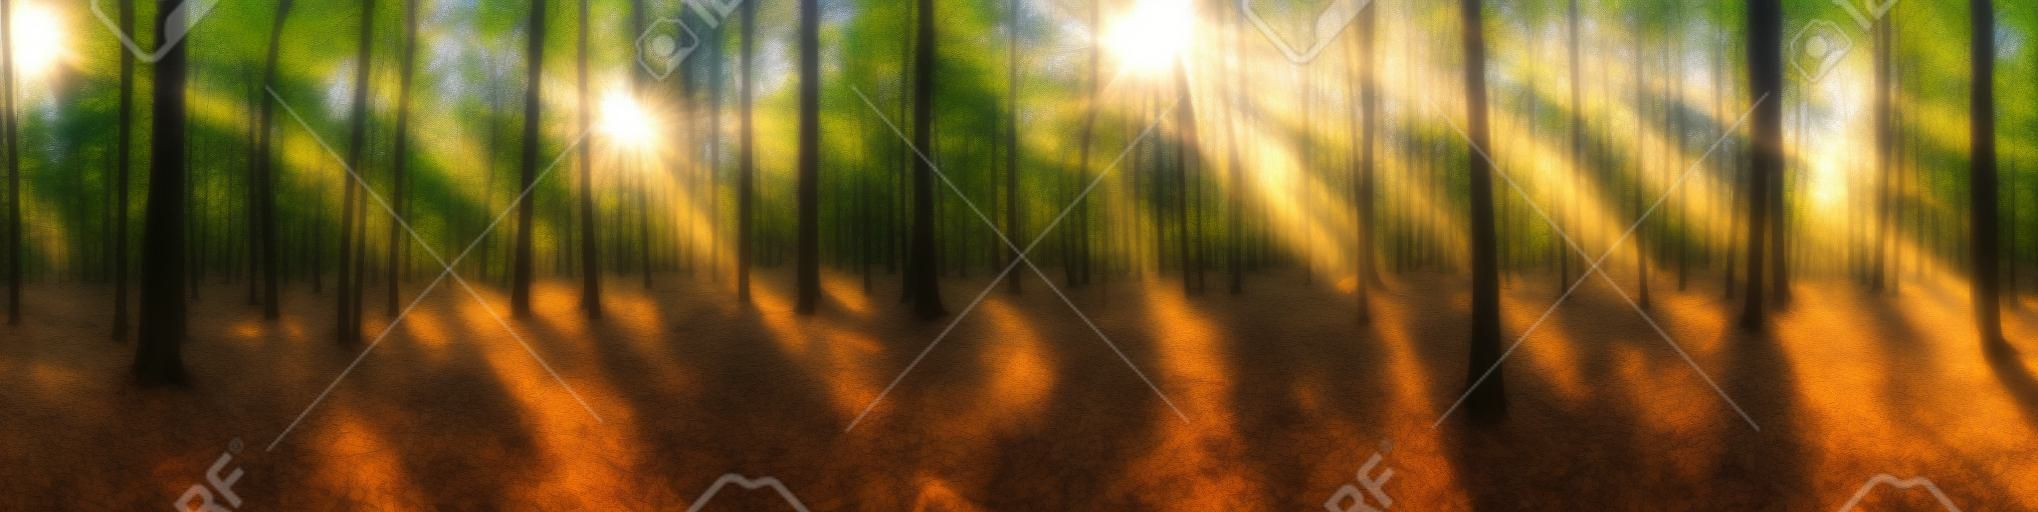 Wunderschönes Waldpanorama mit strahlender Sonne durch die Bäume